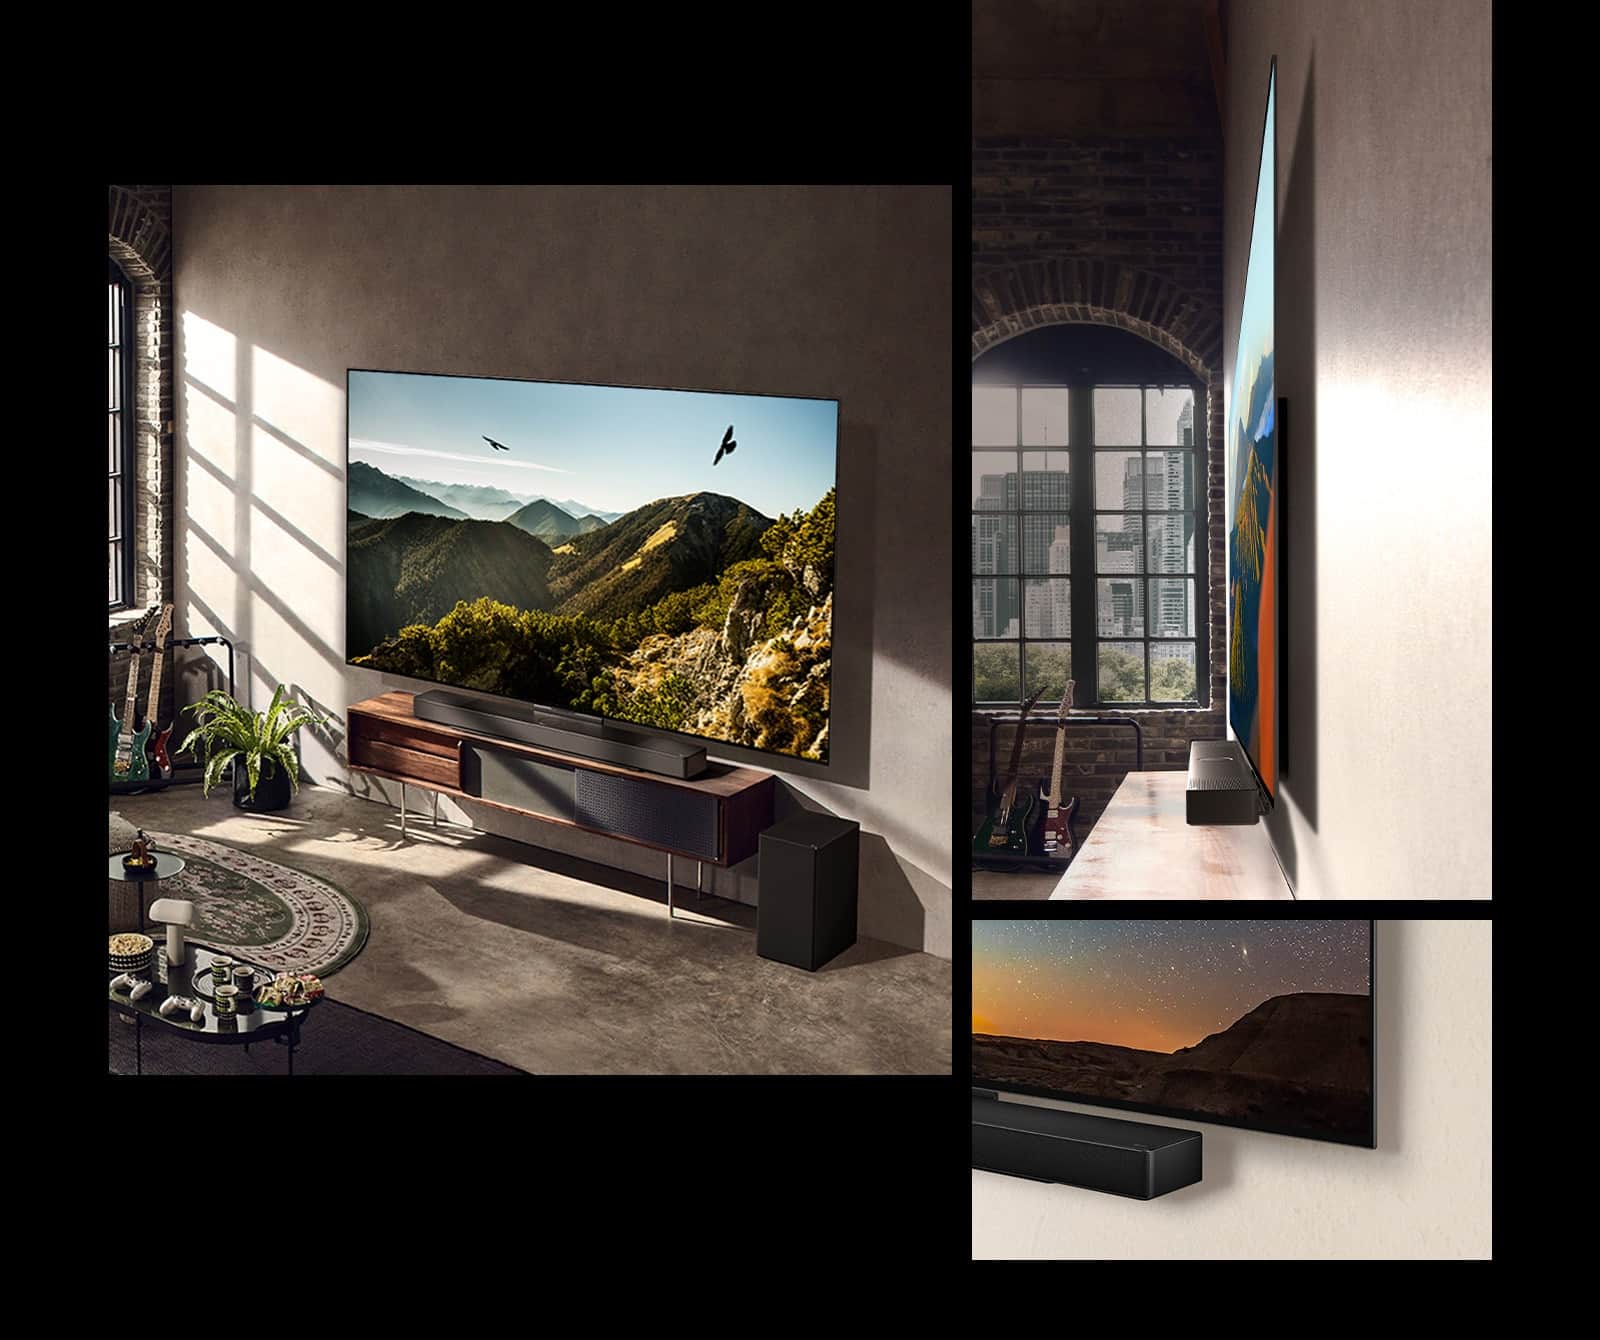 Фотографія телевізора LG OLED C3 із звуковою панеллю на стіні в художньо оформленій кімнаті. Вид збоку, який показує, наскільки тонкий телевізор LG OLED C3, розміщений перед вікном з видом на місто. Нижній кут телевізора та звукової панелі LG OLED C3.